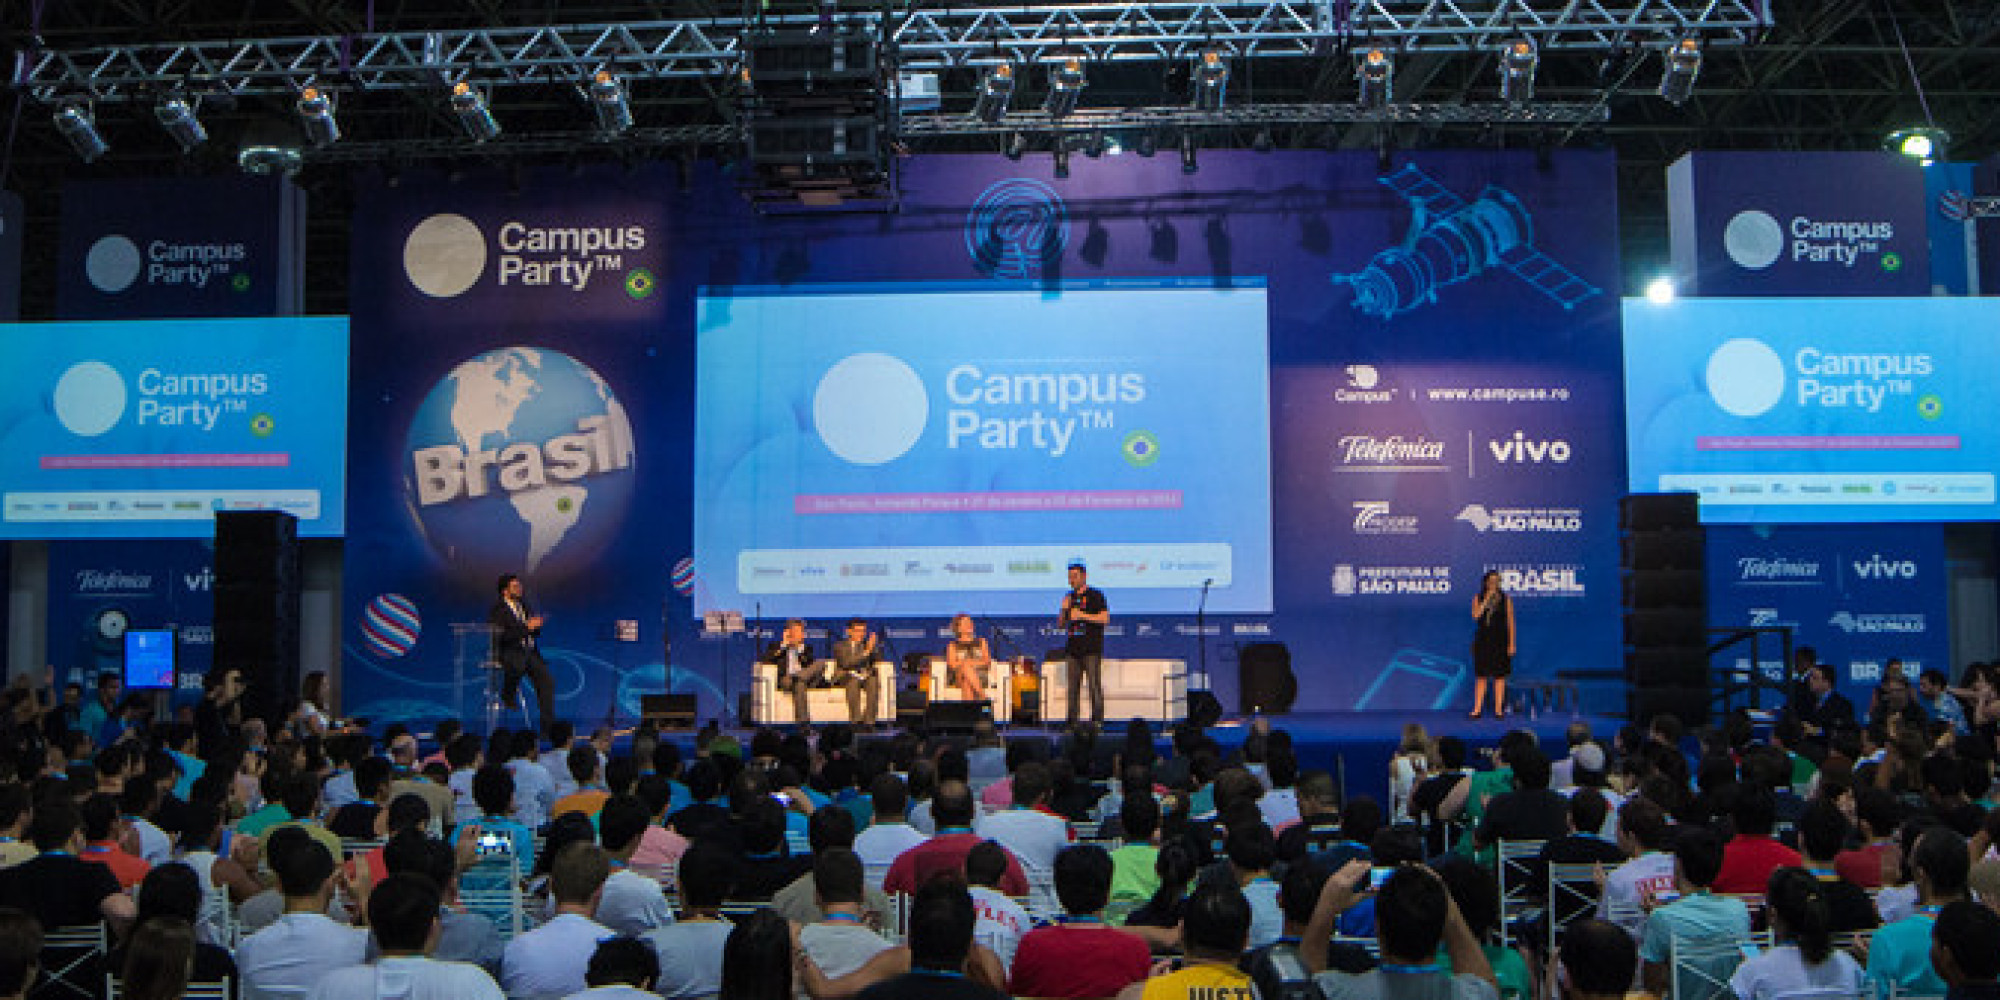 Startup brasiliense é vencedora em competição na Campus Party